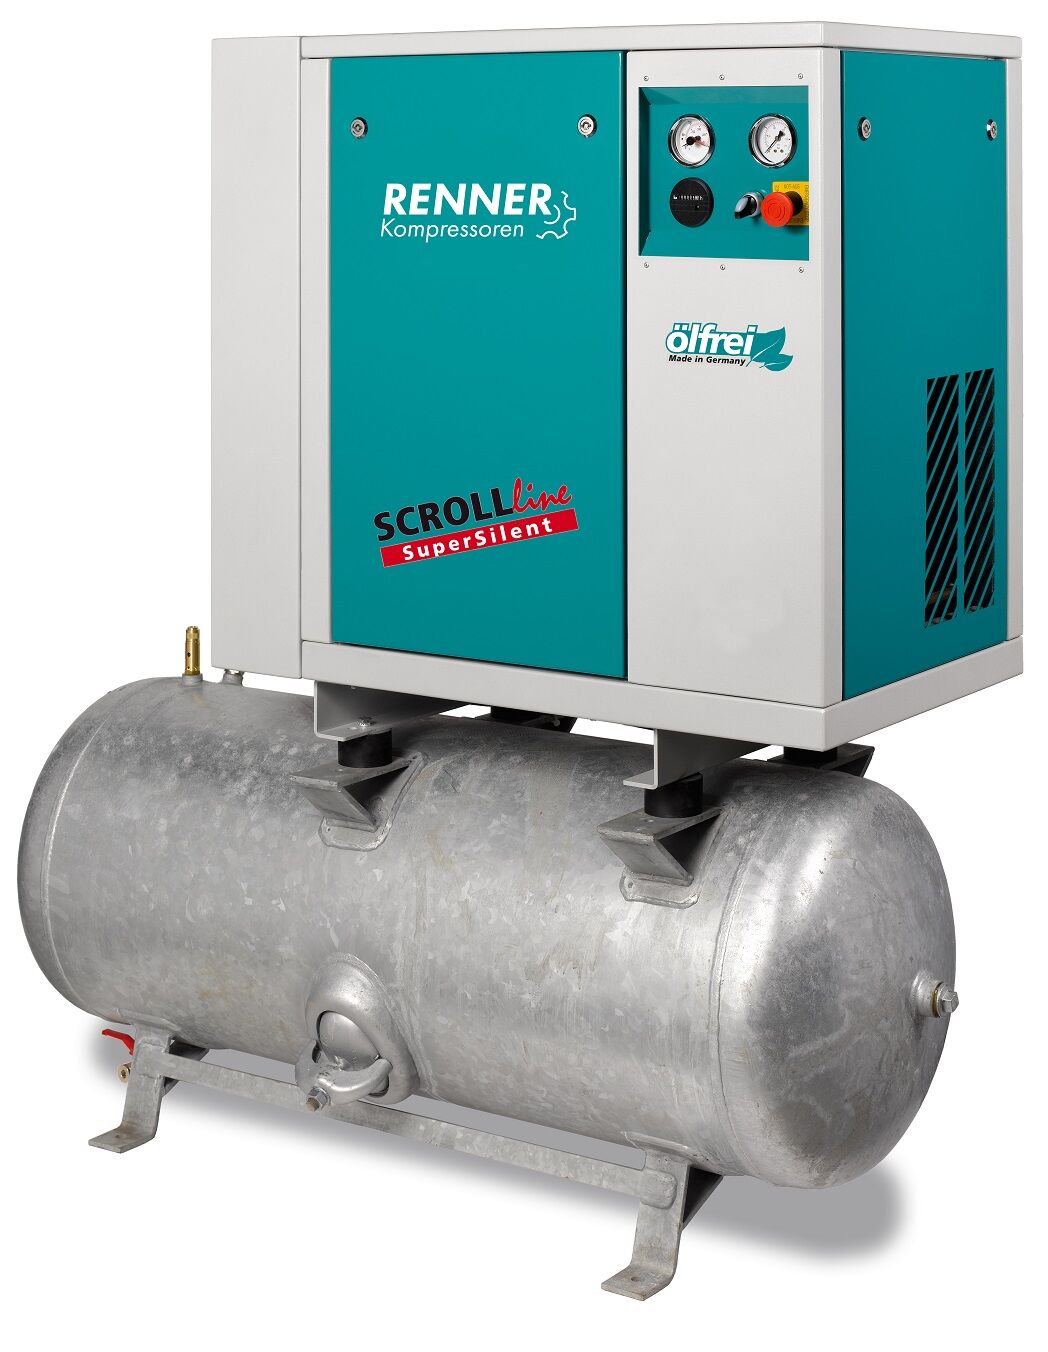 RENNER-Kompressor SLD-S 4,5 auf 250 Liter Druckbehälter- SuperSilent ölfreier Scrollkompressor